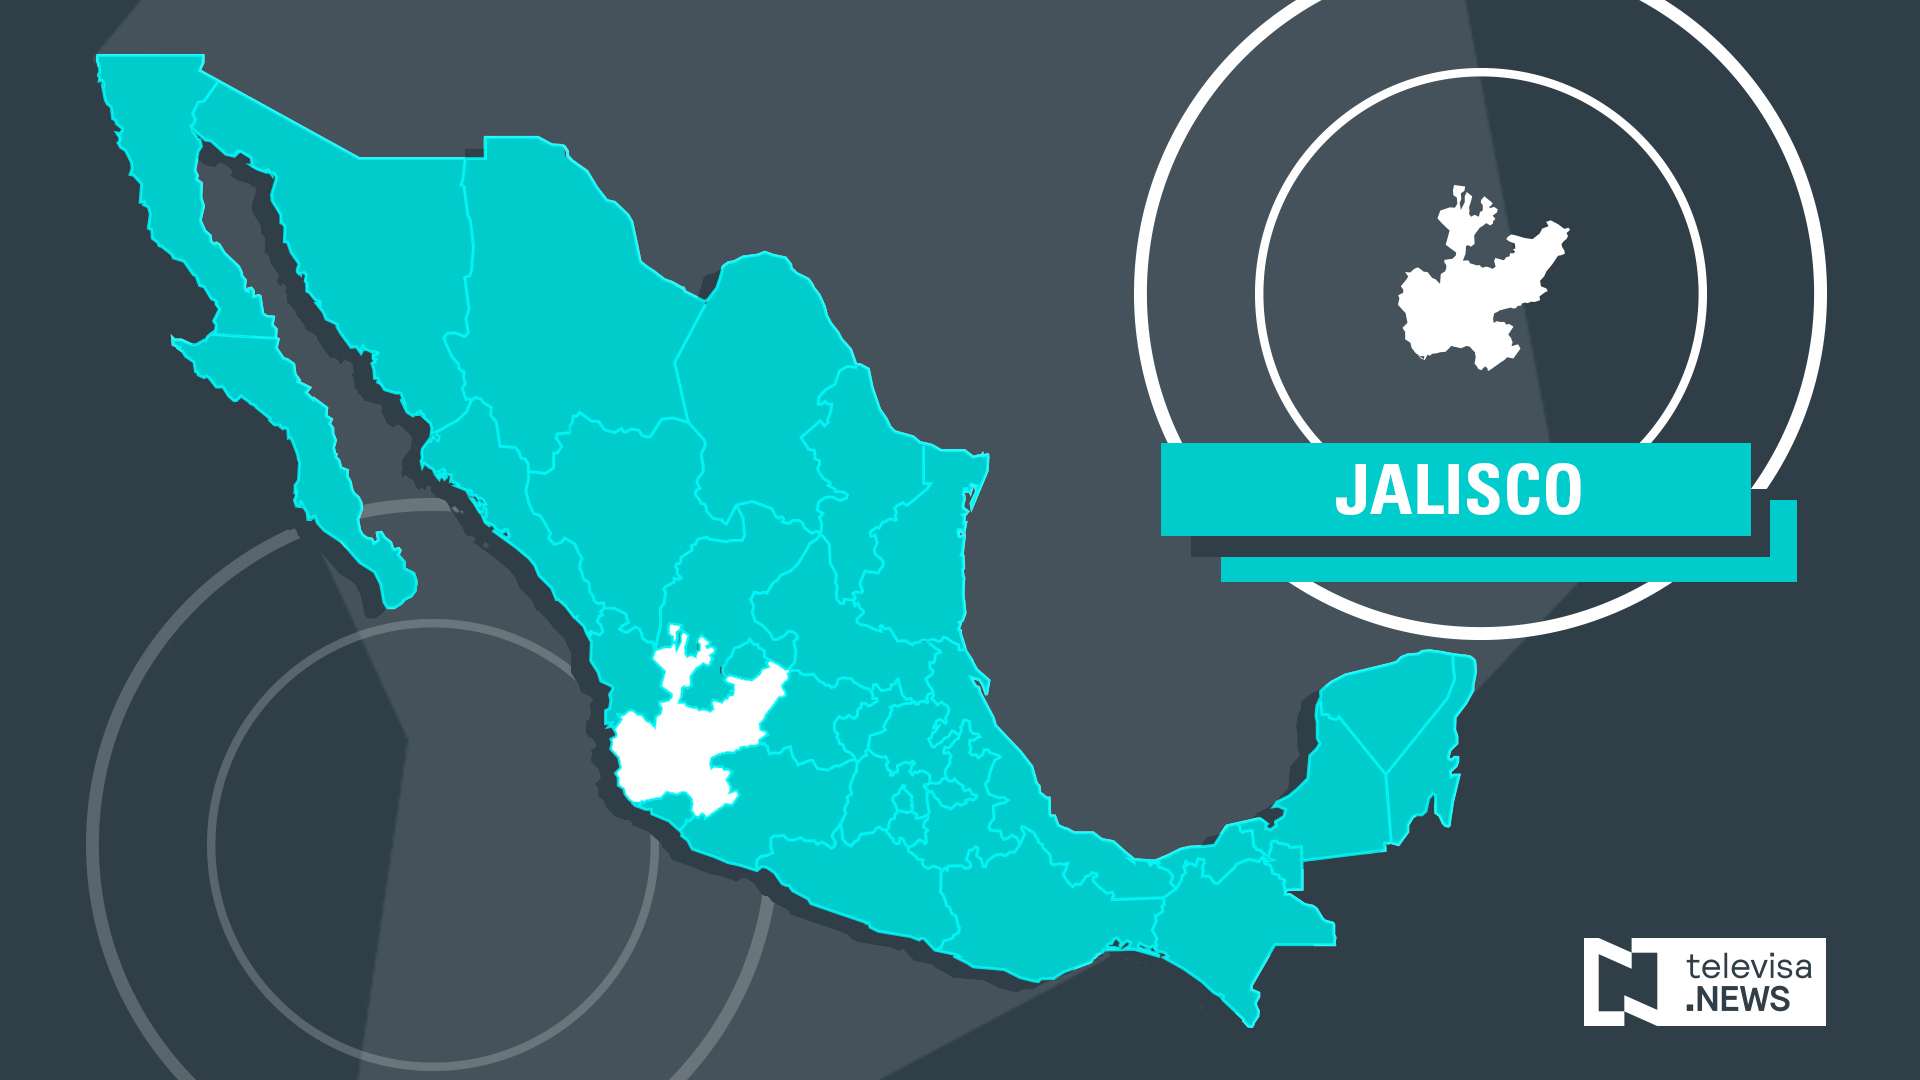 Bomberos rescatan a hombre que intentaba suicidarse en Jalisco